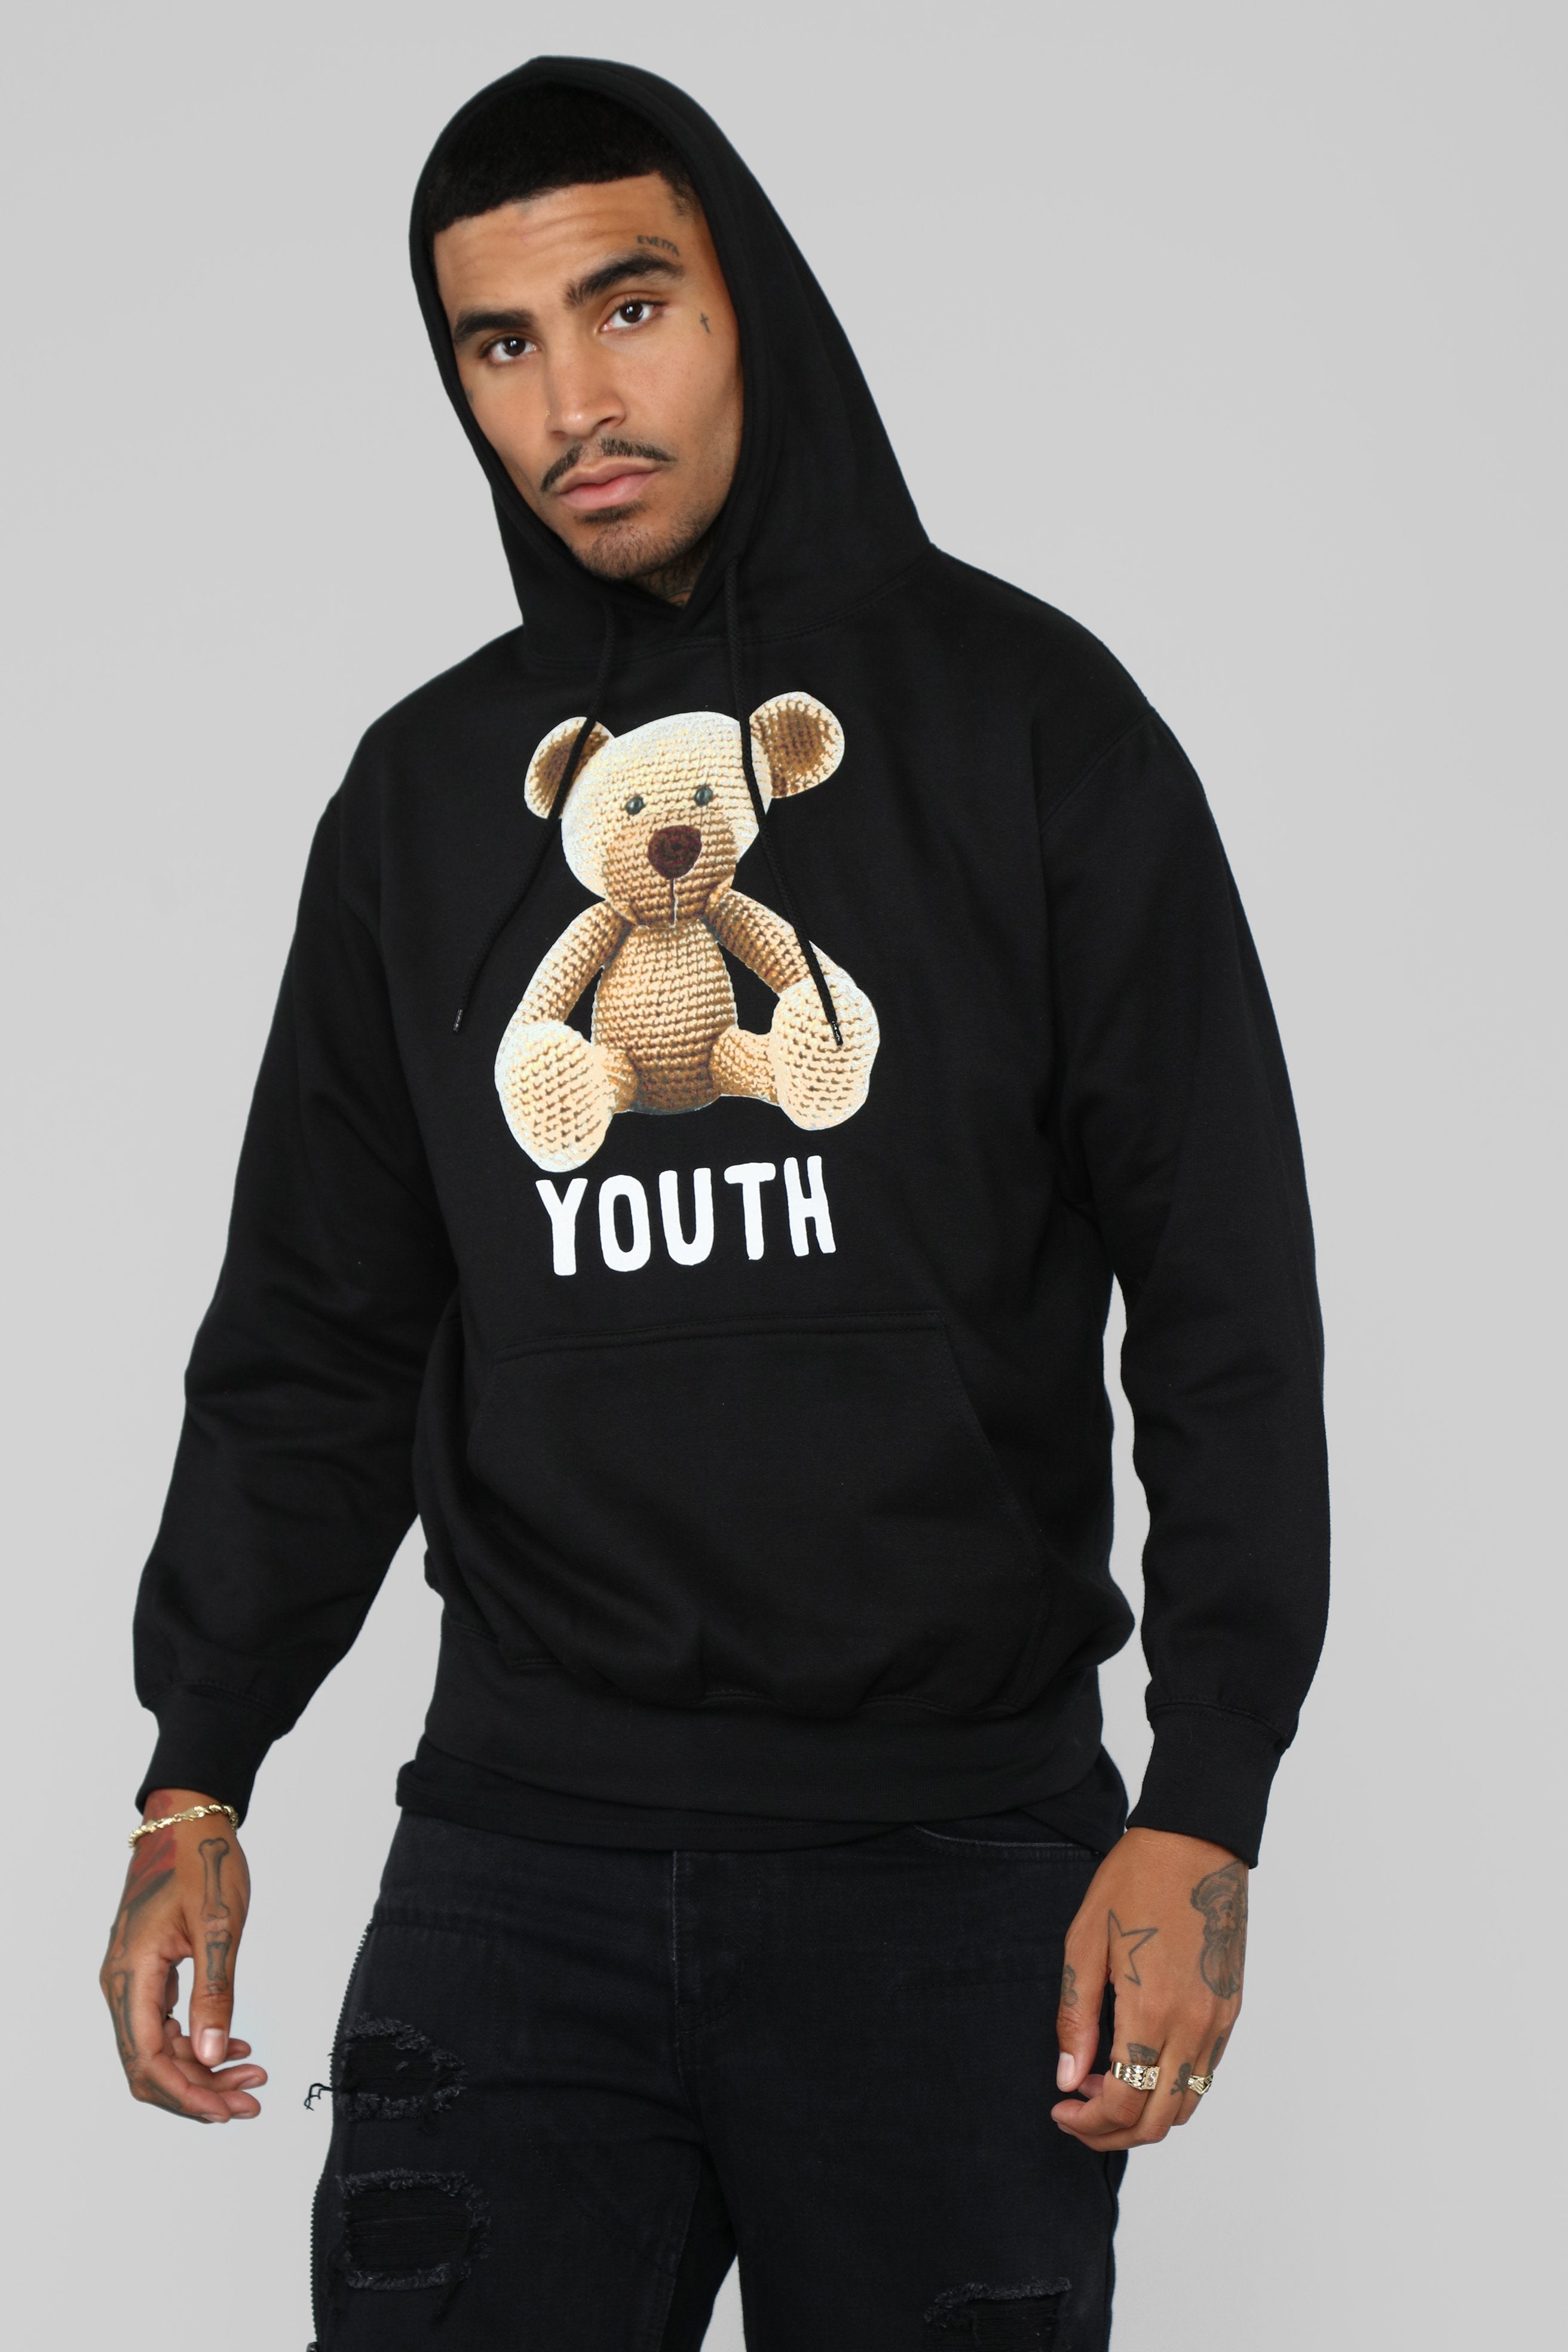 youth black hoodie